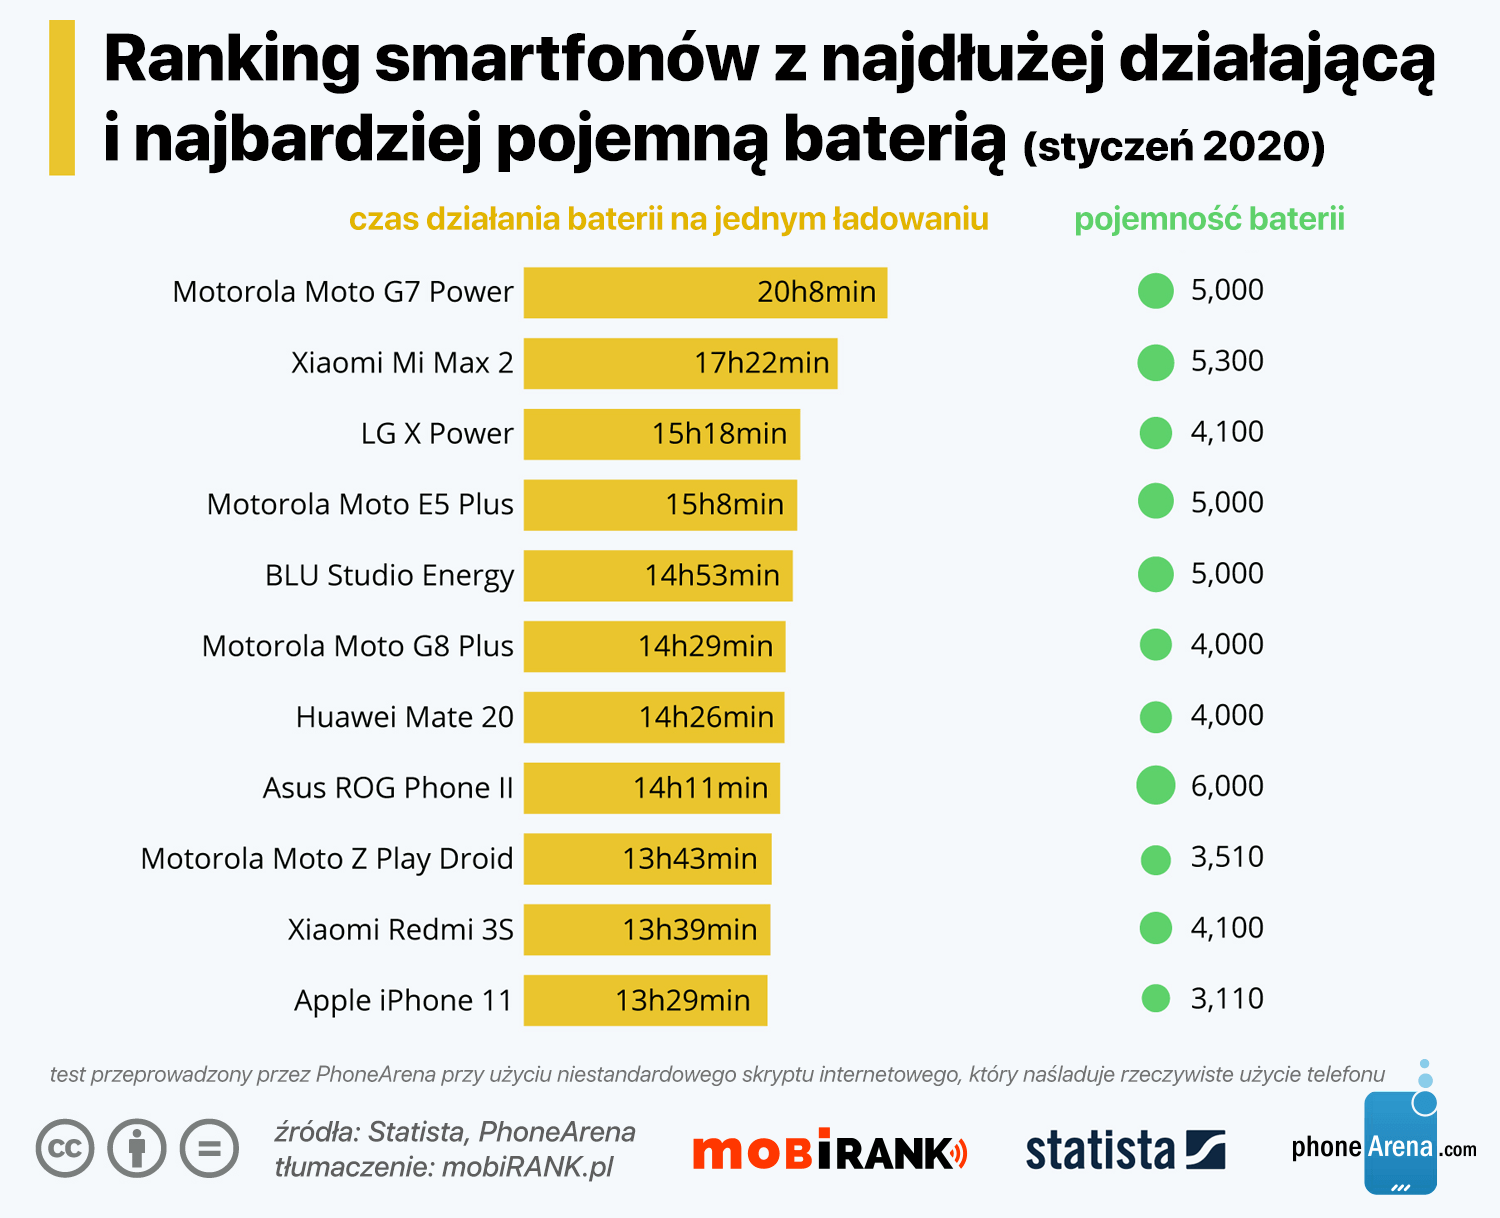 Ranking smartfonów z najdłużej działająca i najbardziej pojemną baterią (styczeń 2020 r.)